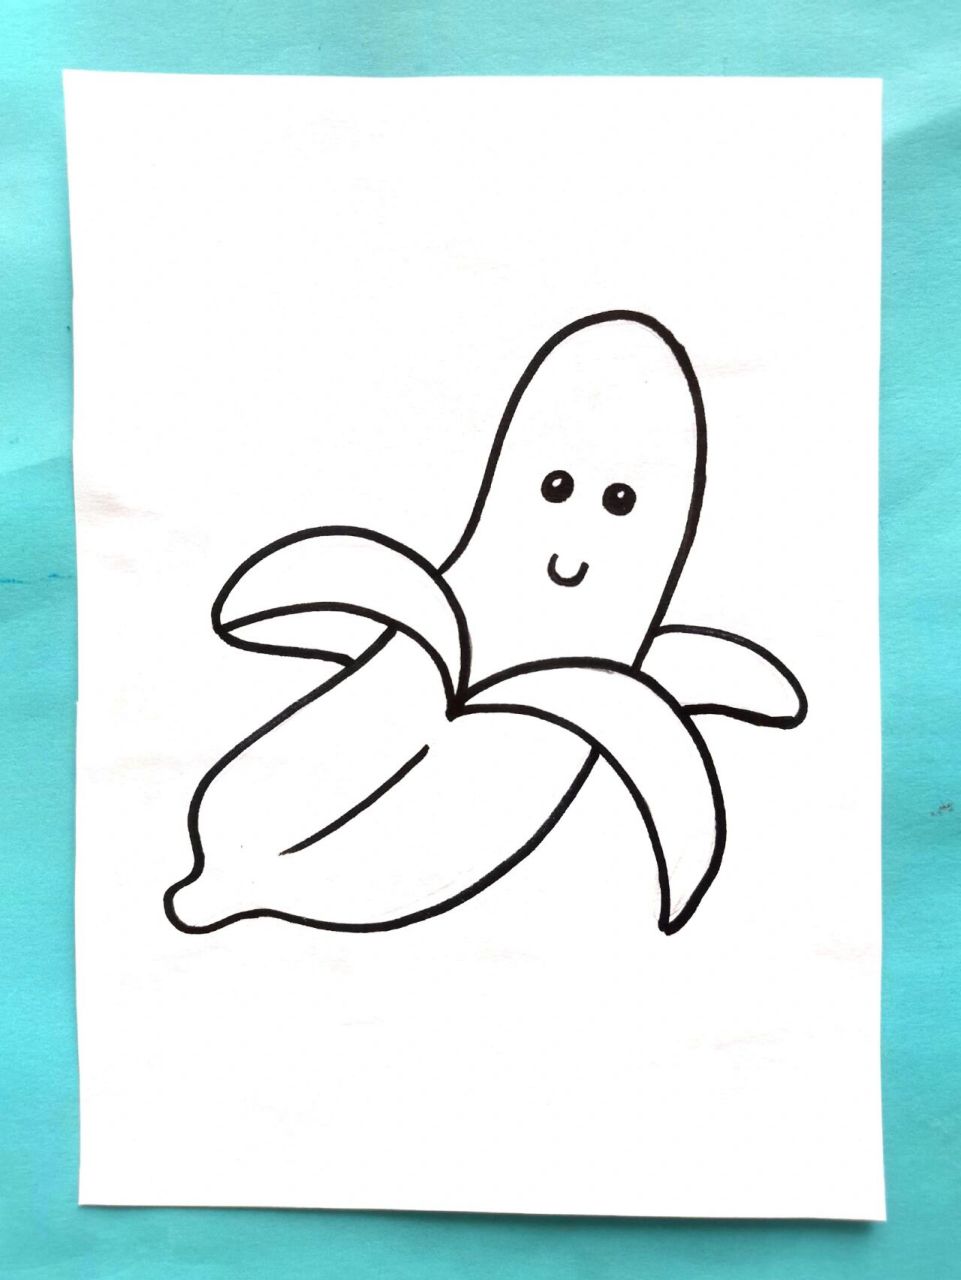 香蕉椅子简笔画图片